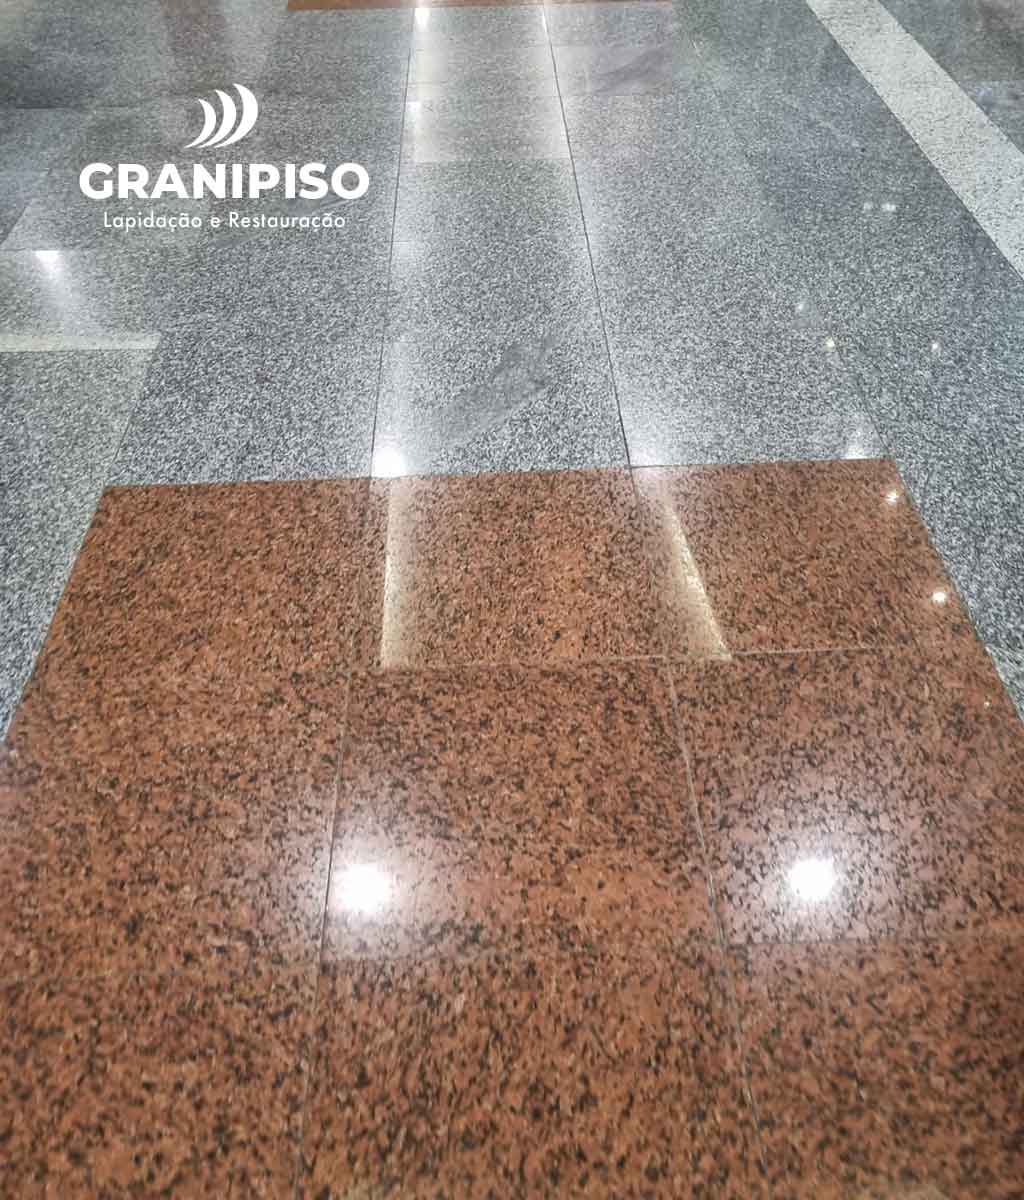 piso-granito-lapidacao-e-retauracao-granipiso-01